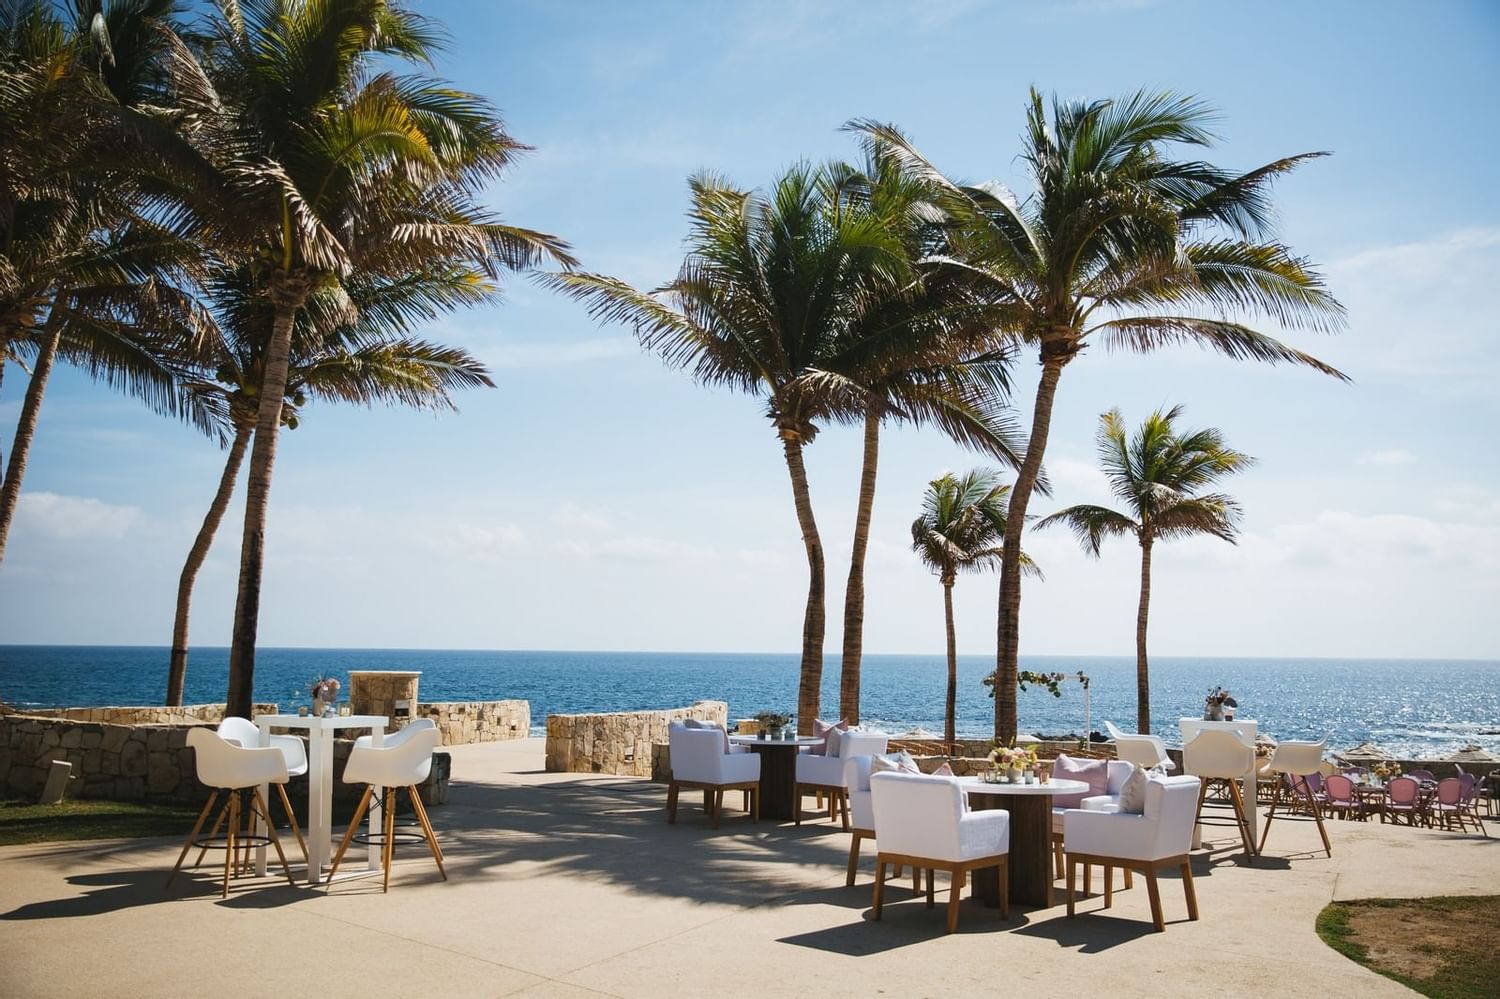 Cena al aire libre con vista a la playa desde los hoteles Fiesta Americana